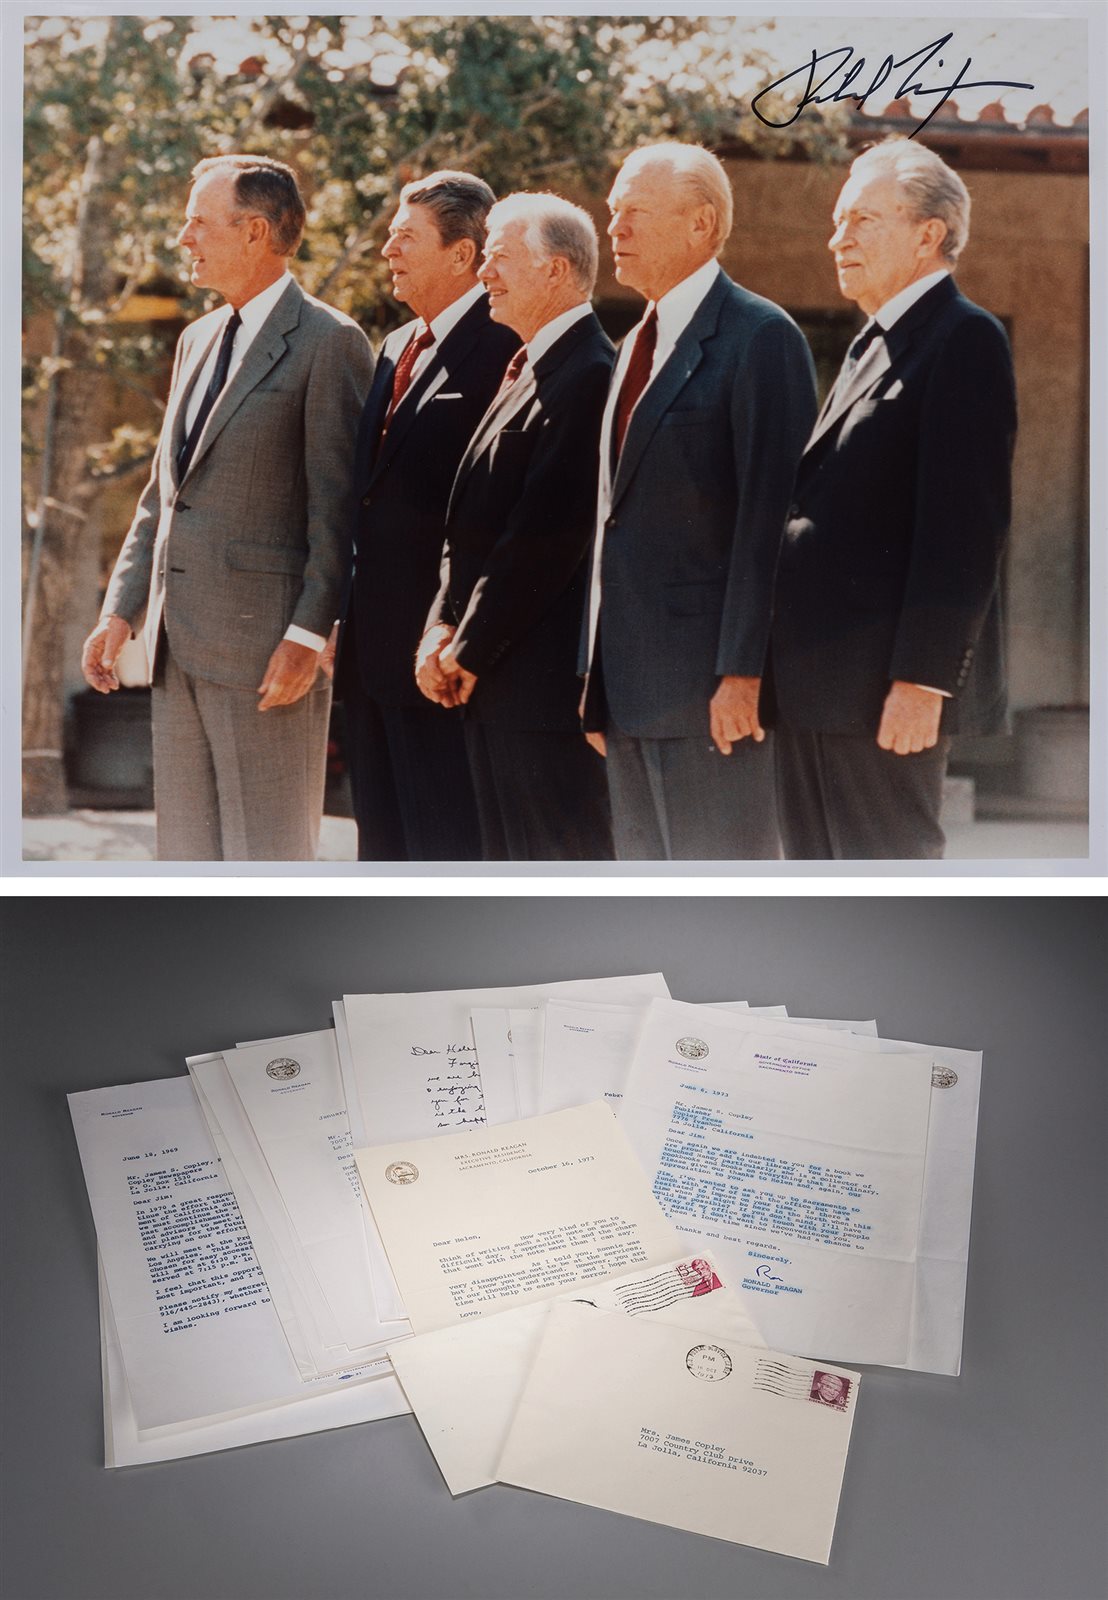 美国40任总统里根任加利福尼亚州长期间签名信札20件及五位总统合影签名照片